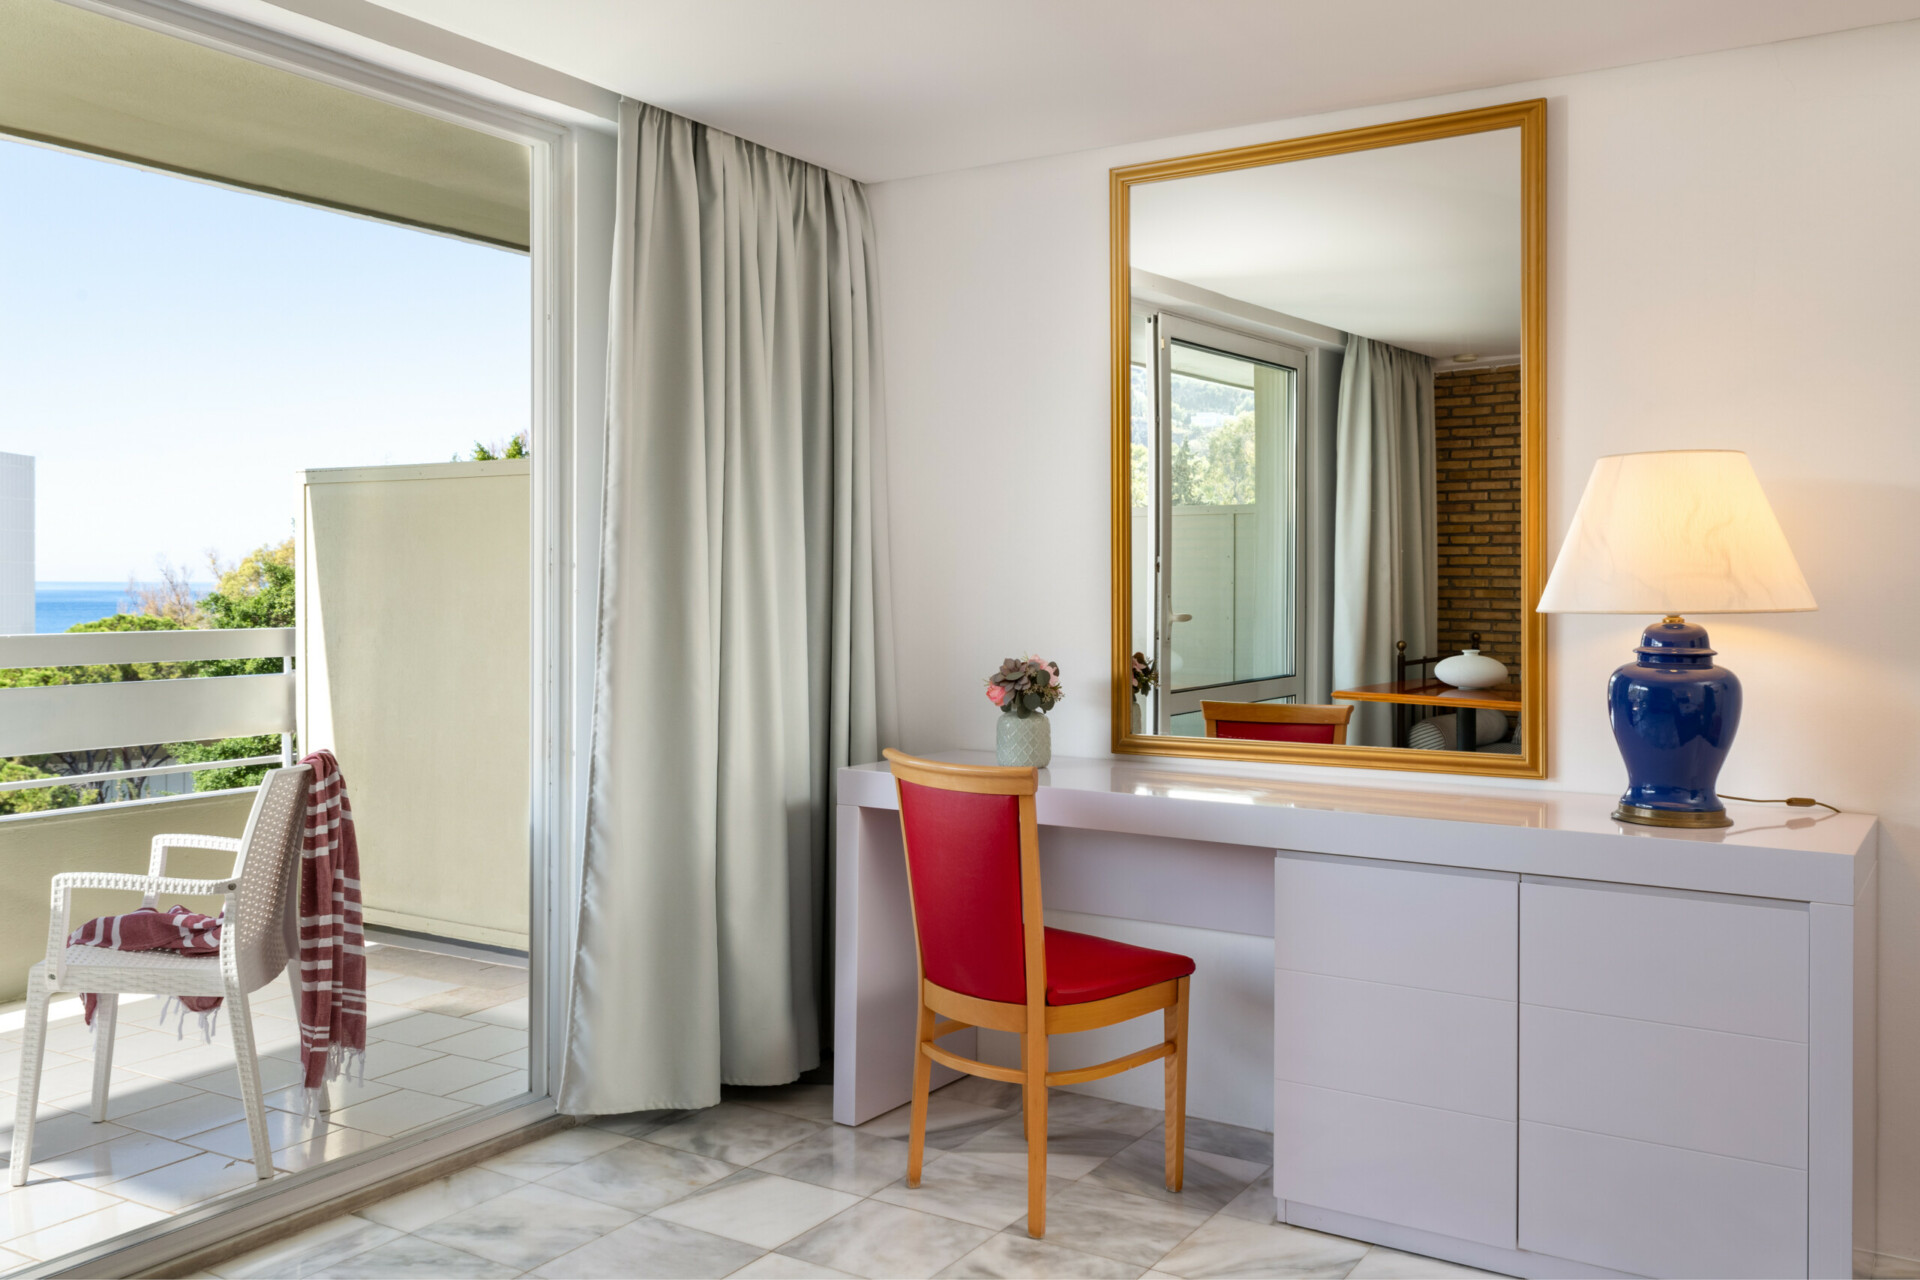 Εσωτερική άποψη του διαμερίσματος δύο δωματίων του ξενοδοχείου Dionysos με ευρύχωρη διαρρύθμιση και μπαλκόνι